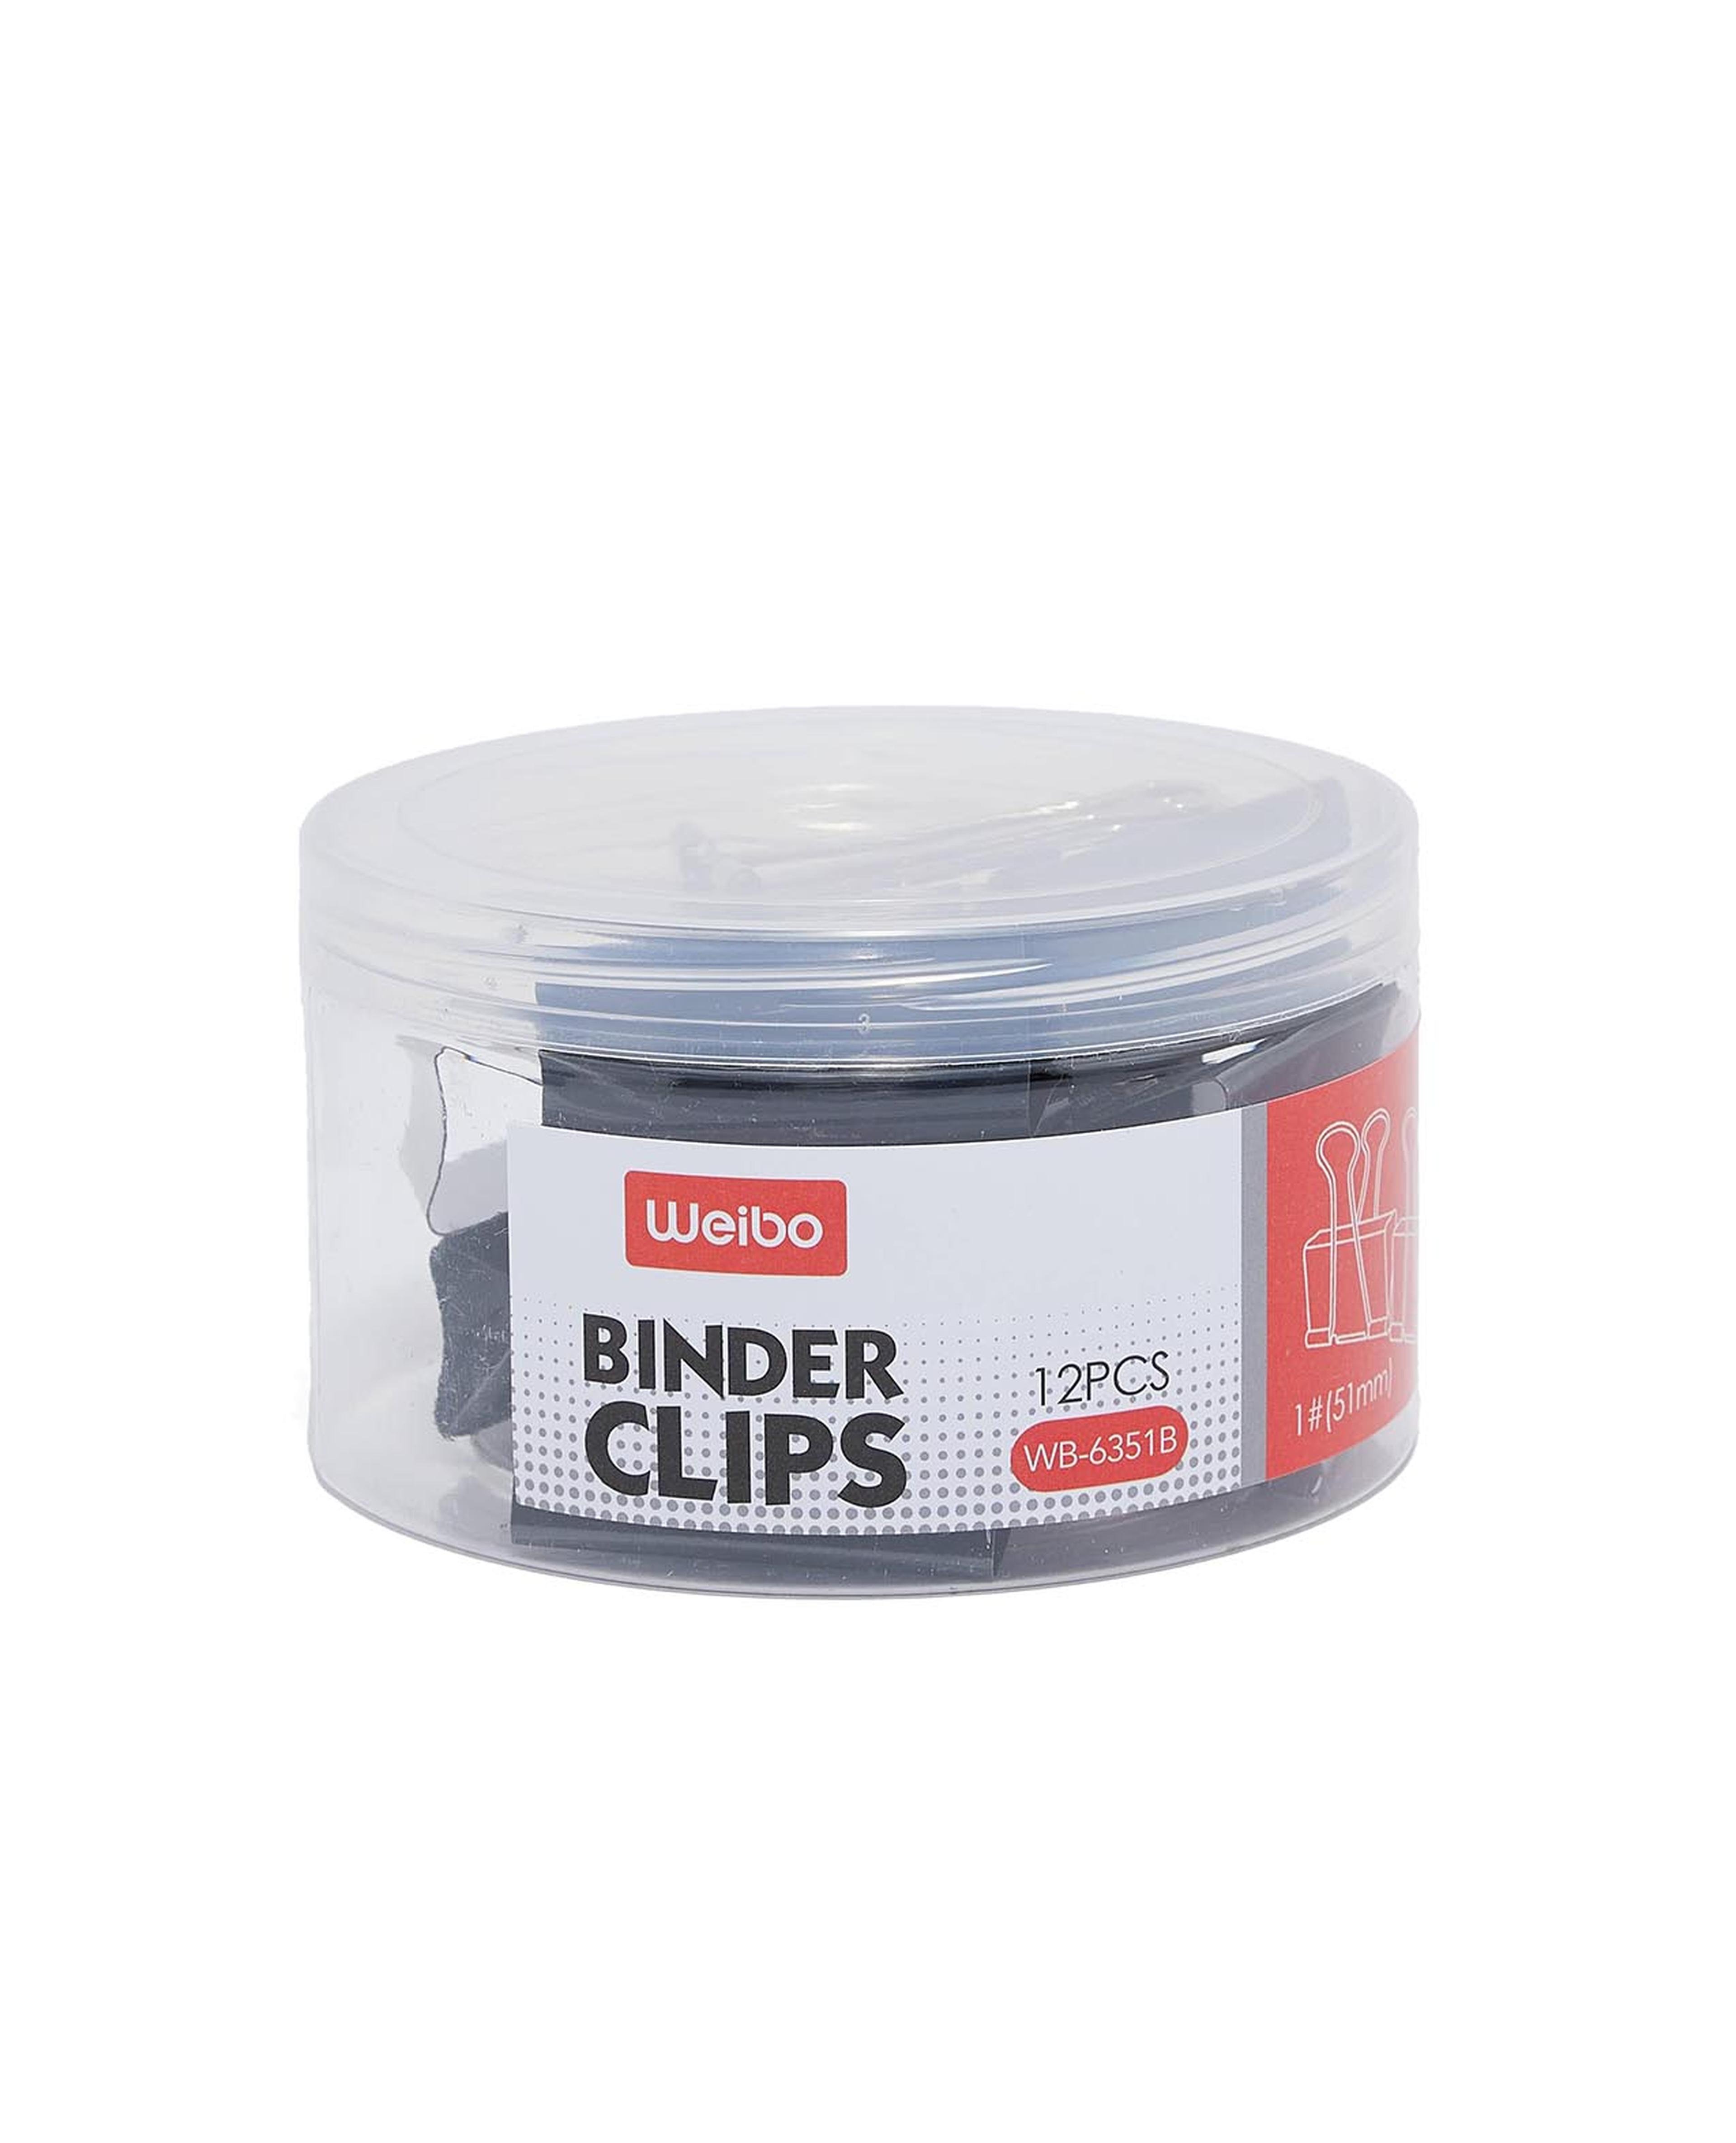 24 Piece Binder Clips